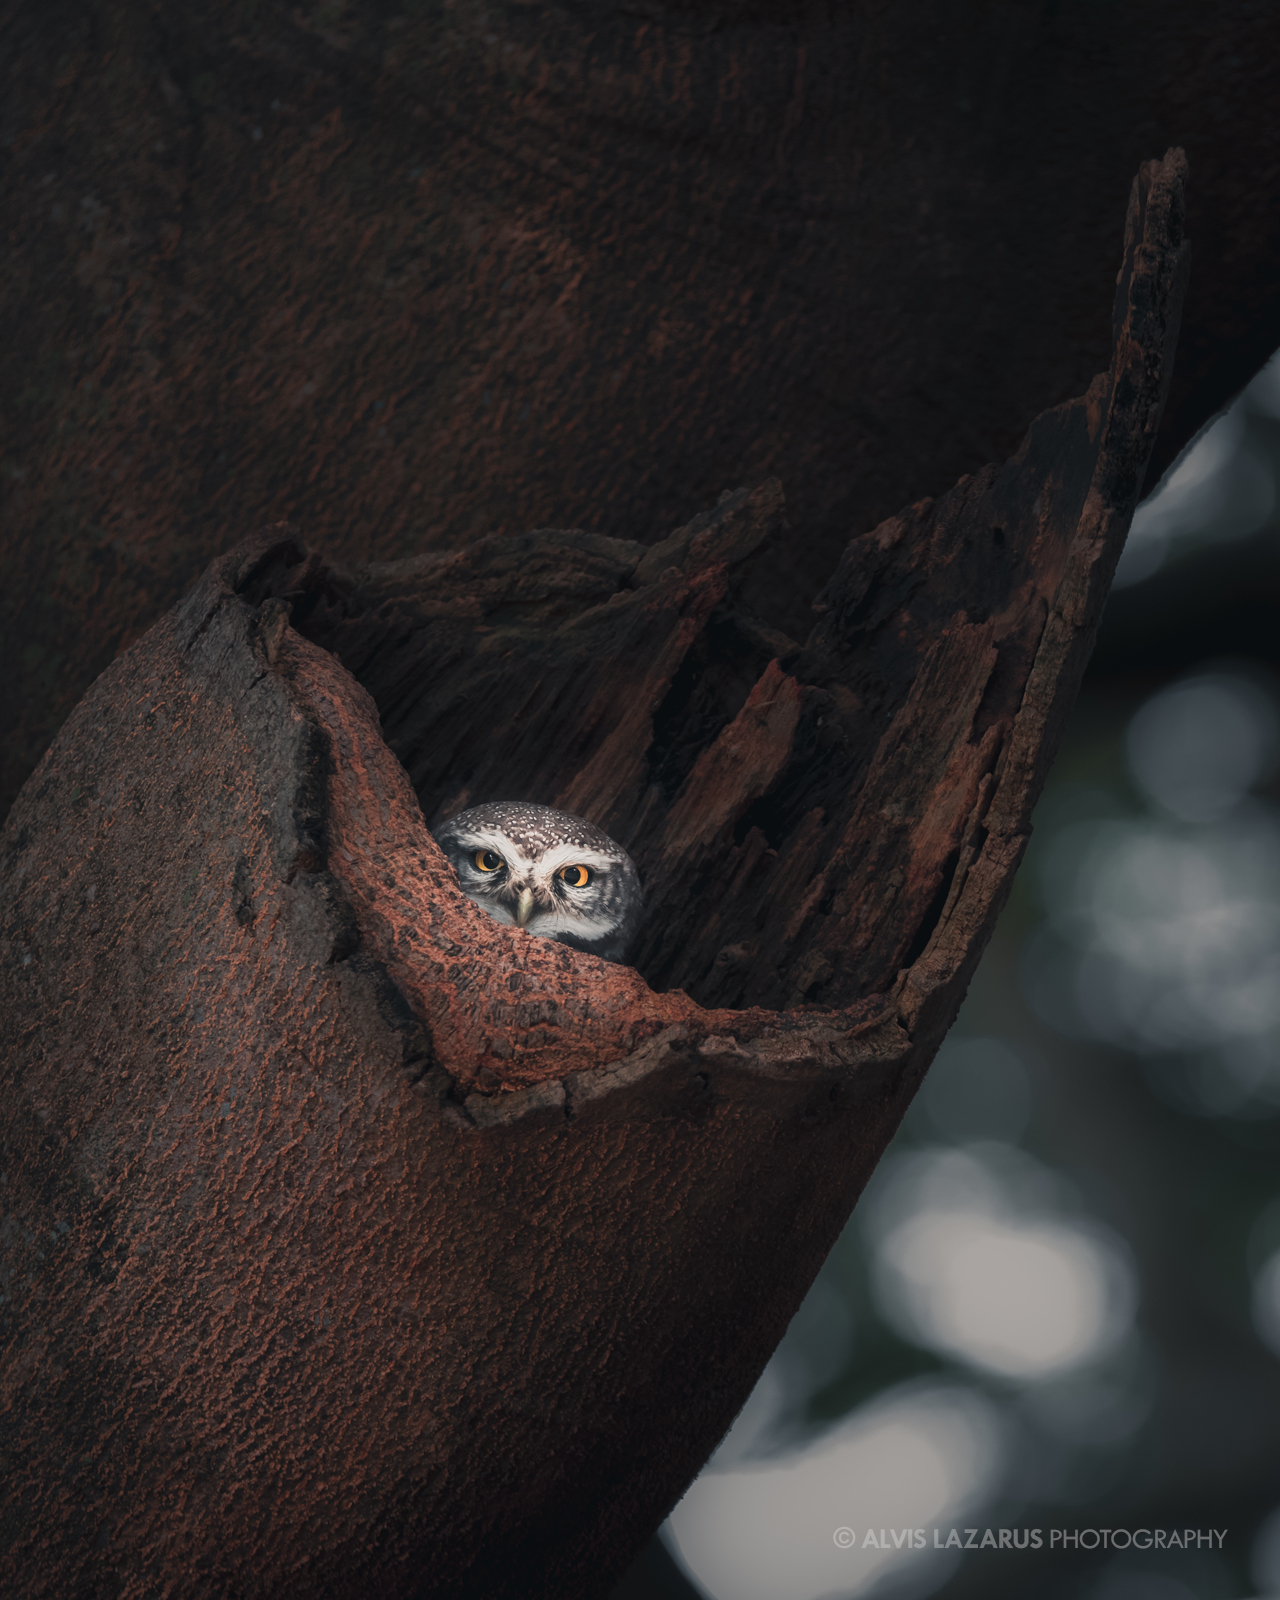 An Owl’s Peek-a-boo